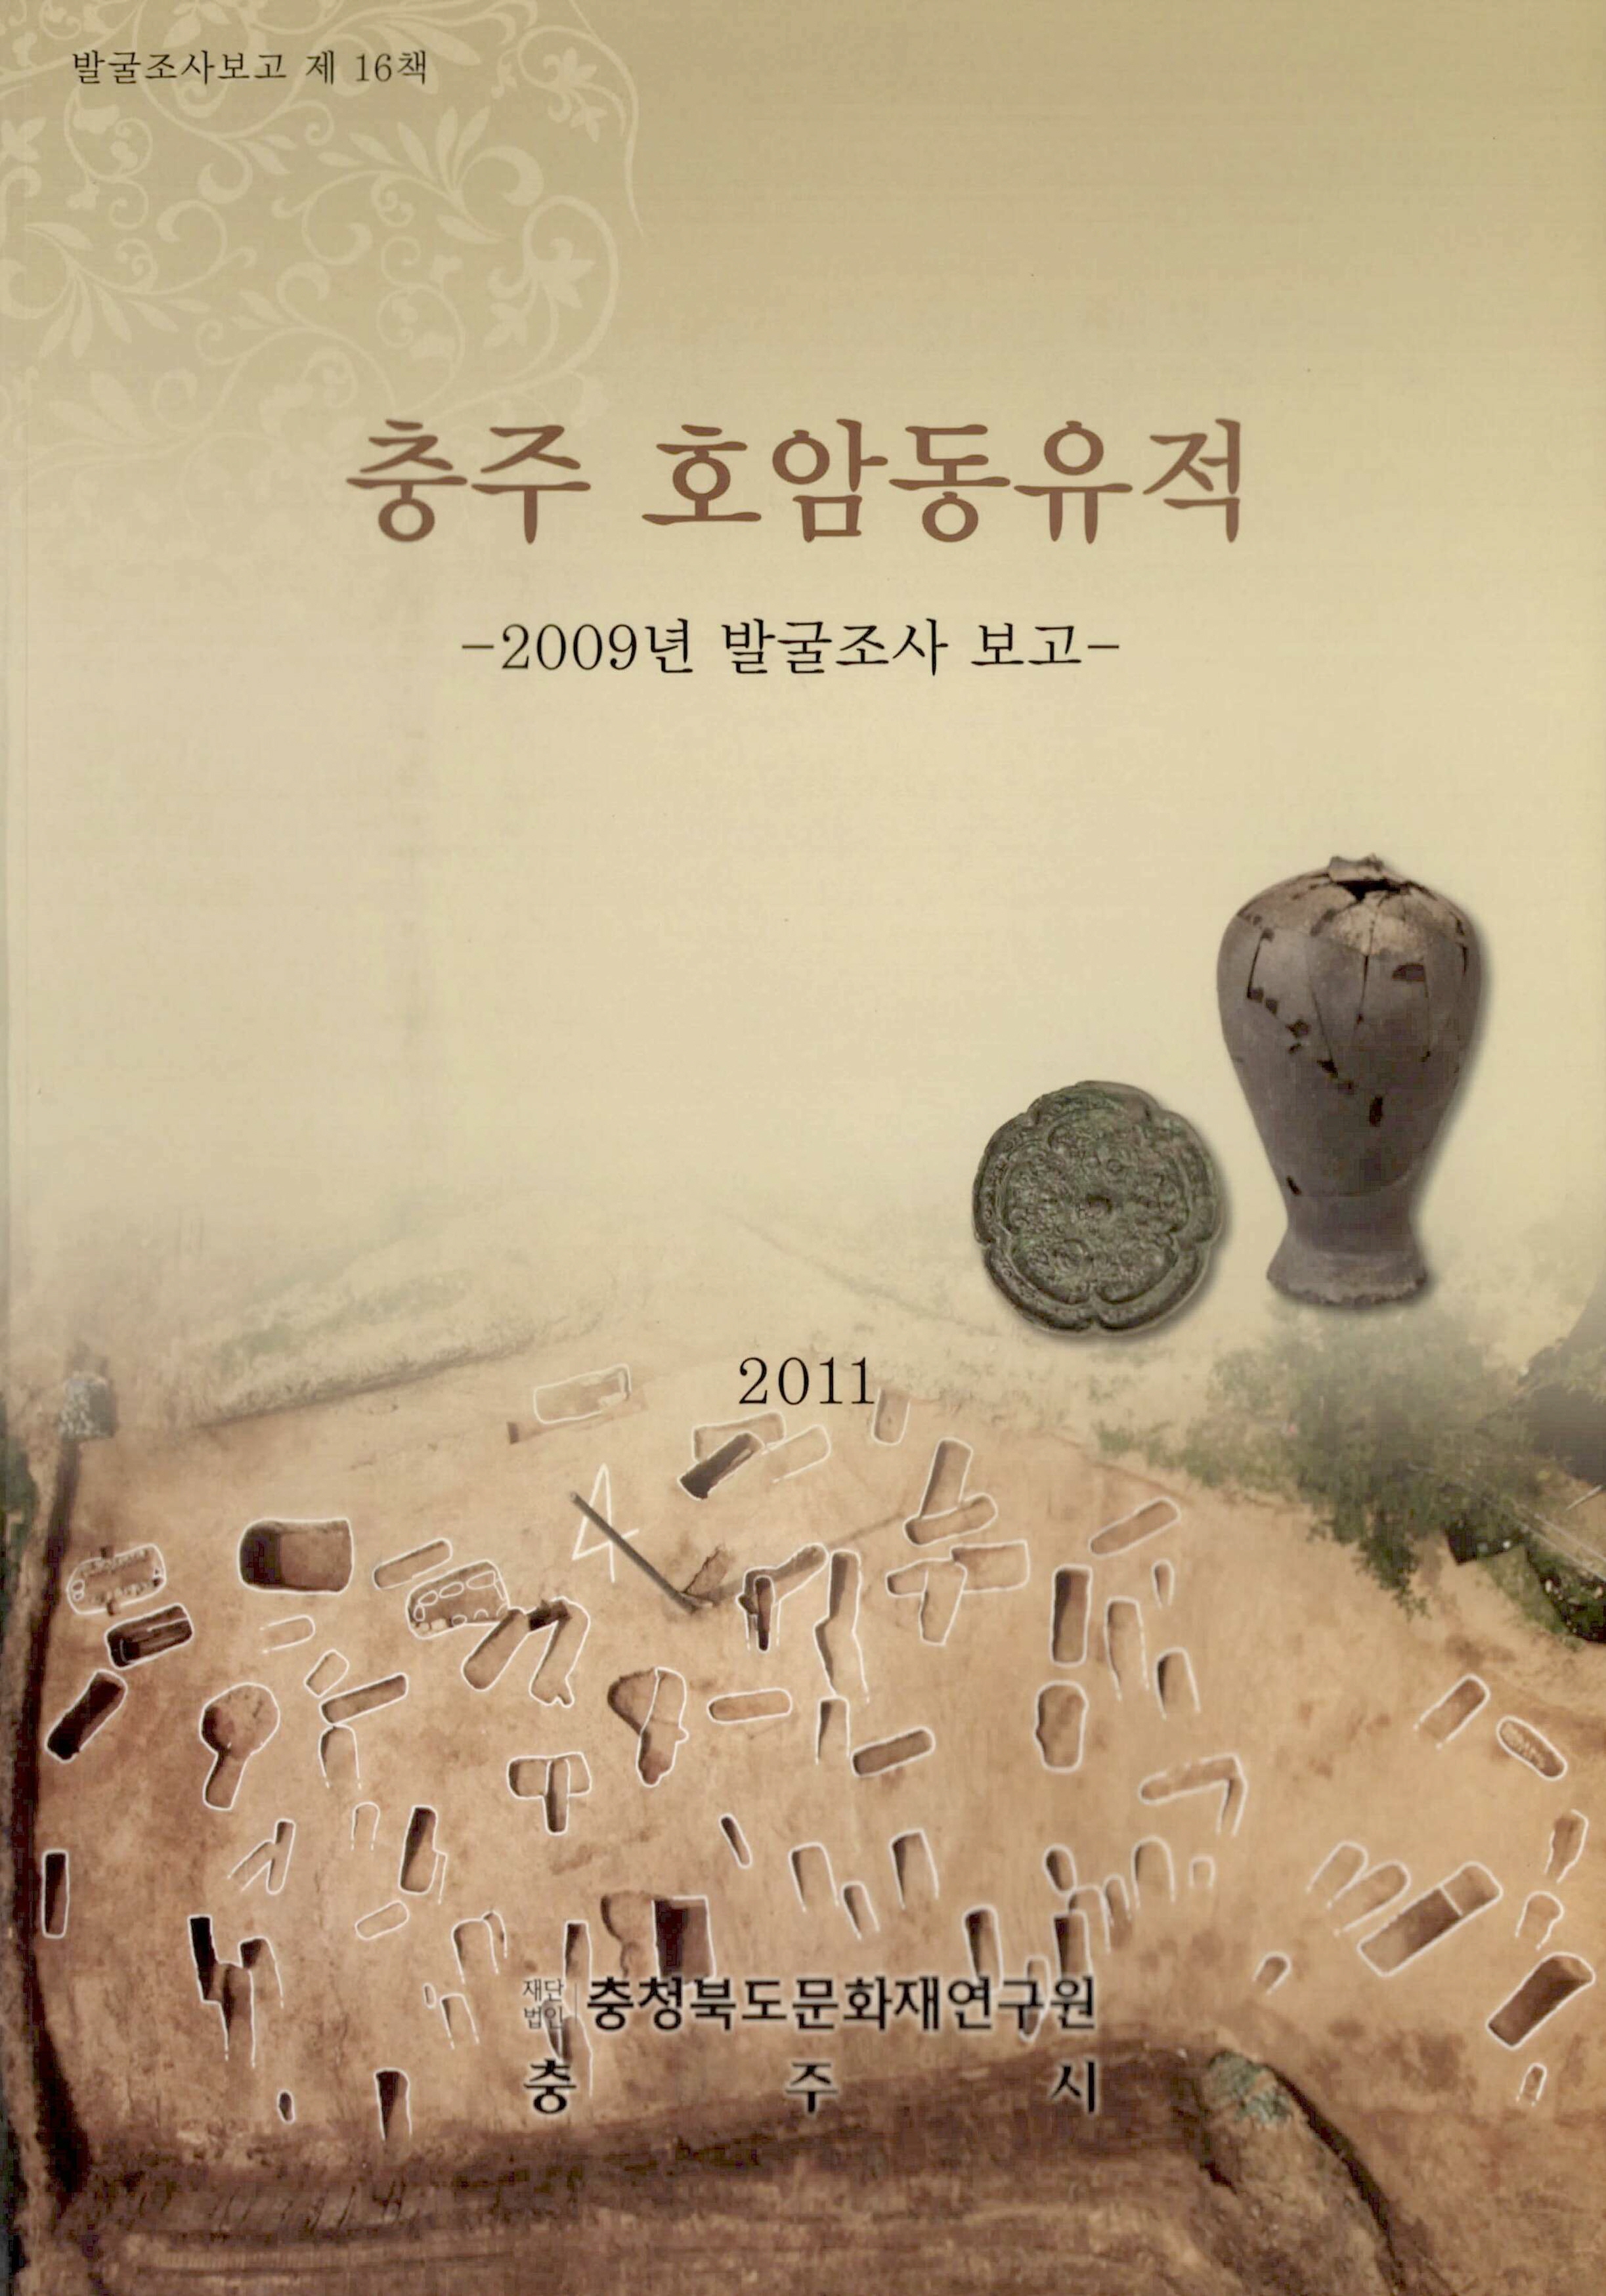 발굴조사보고 충주 호암동 유적 2009년 발굴조사 보고